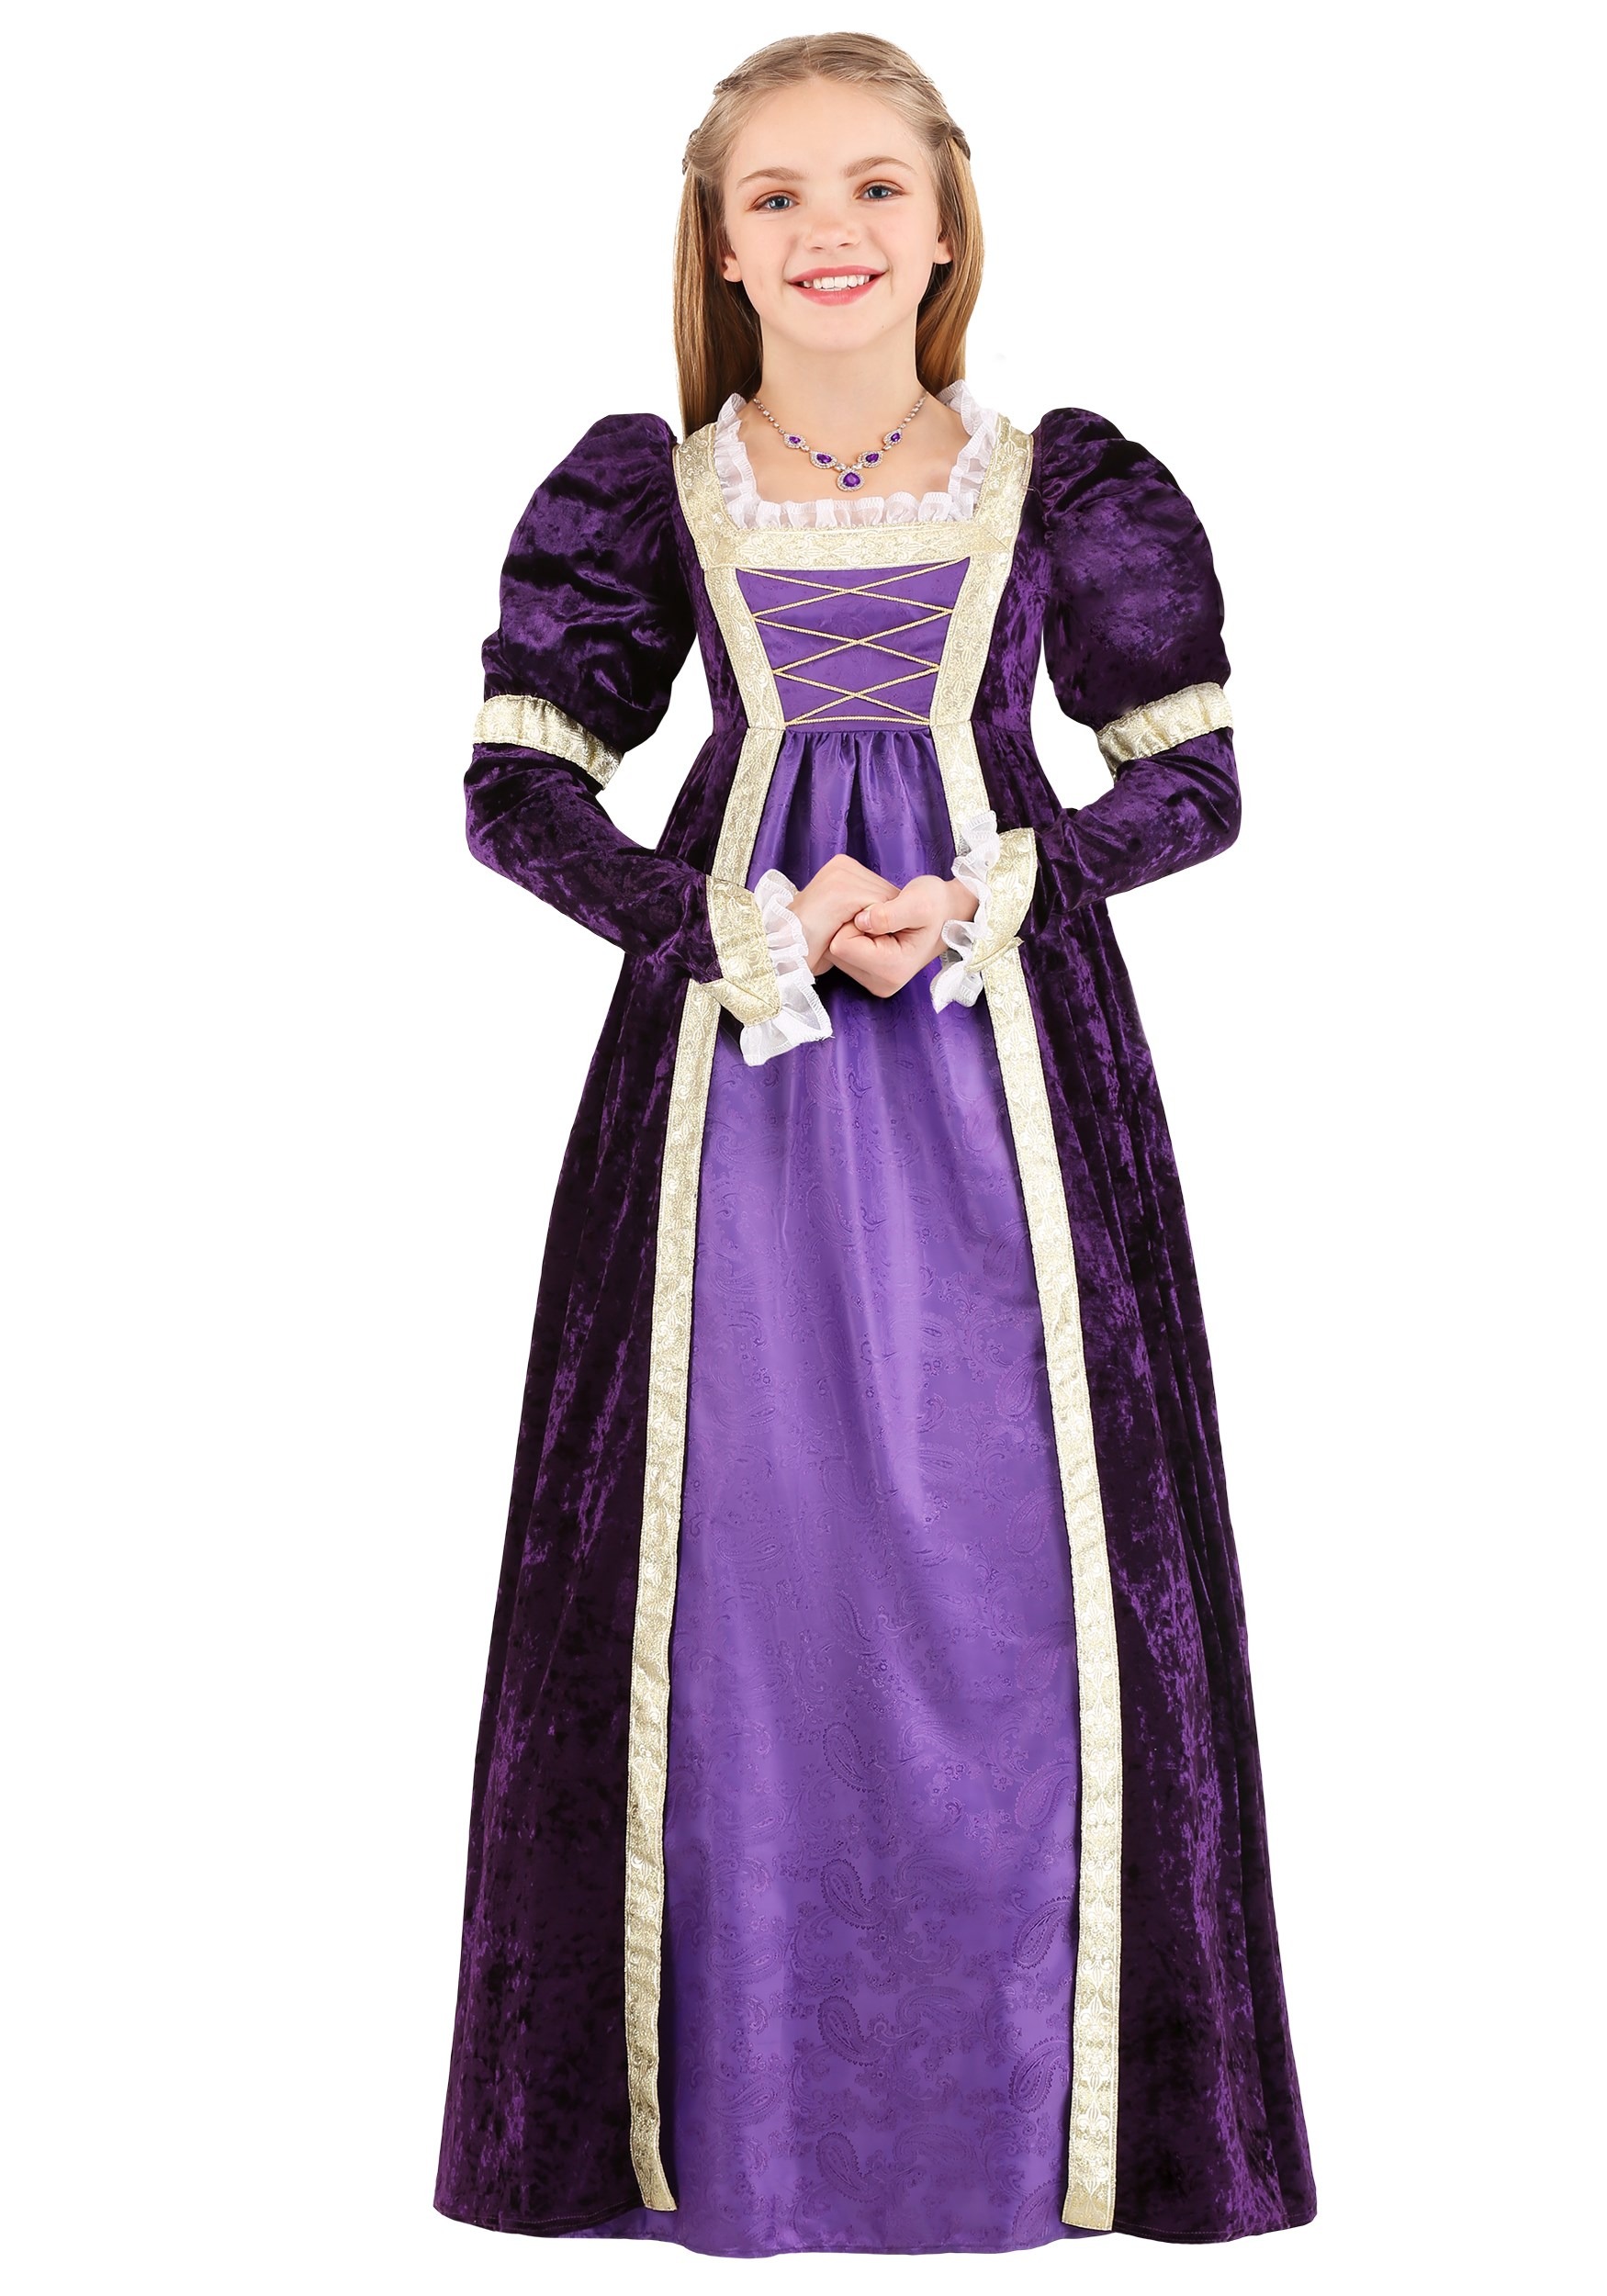 Kid's Amethyst Princess Costume